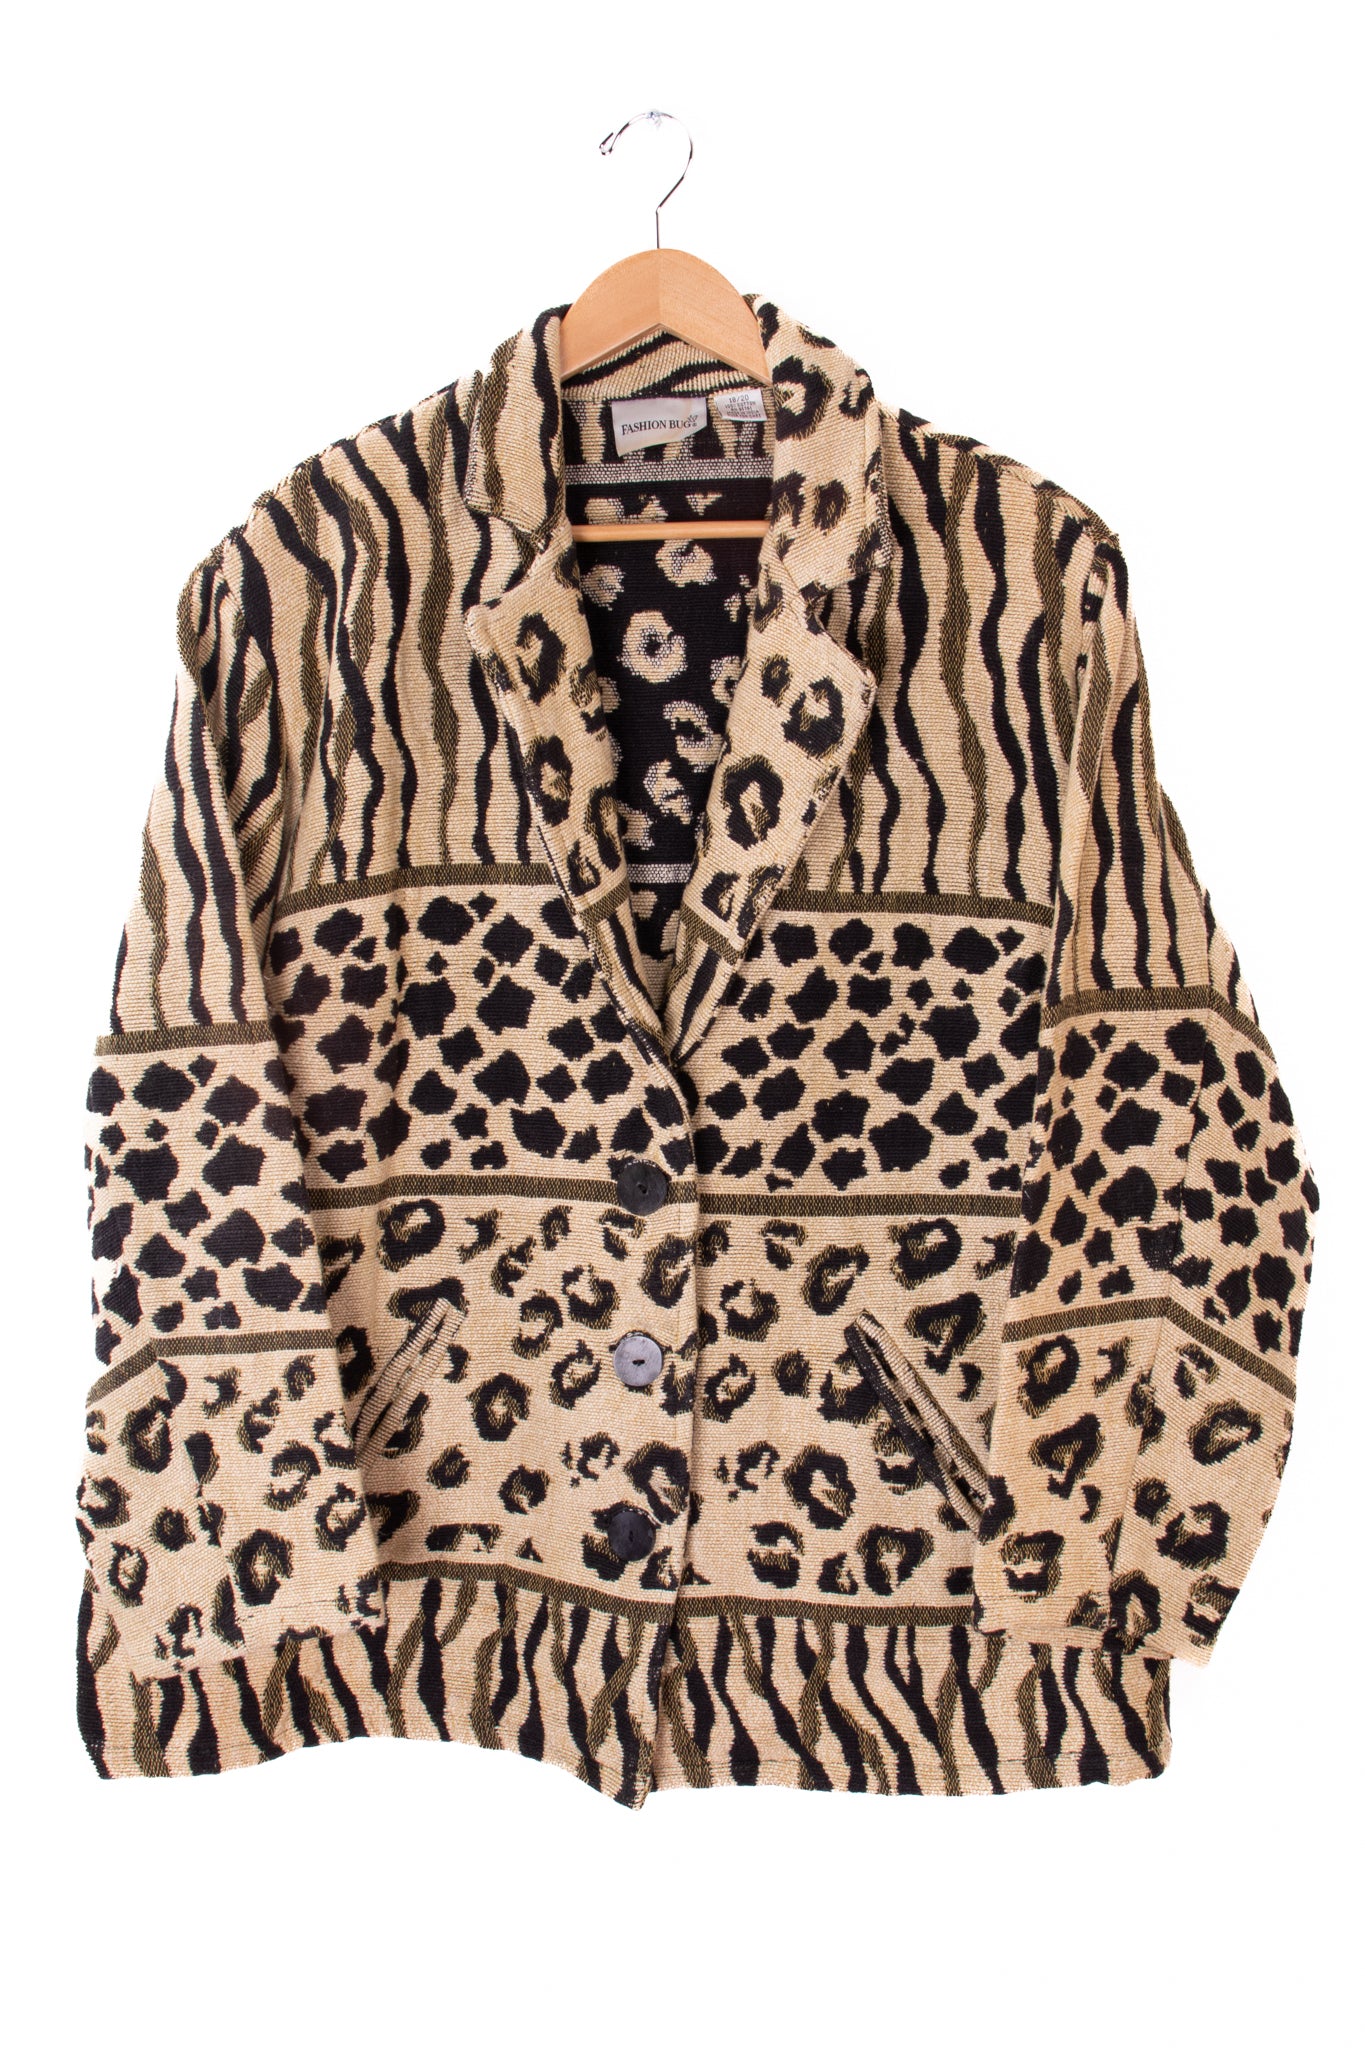 90s Fashion Bug Wild Cat Tapestry Jacket – Neomai Vintage